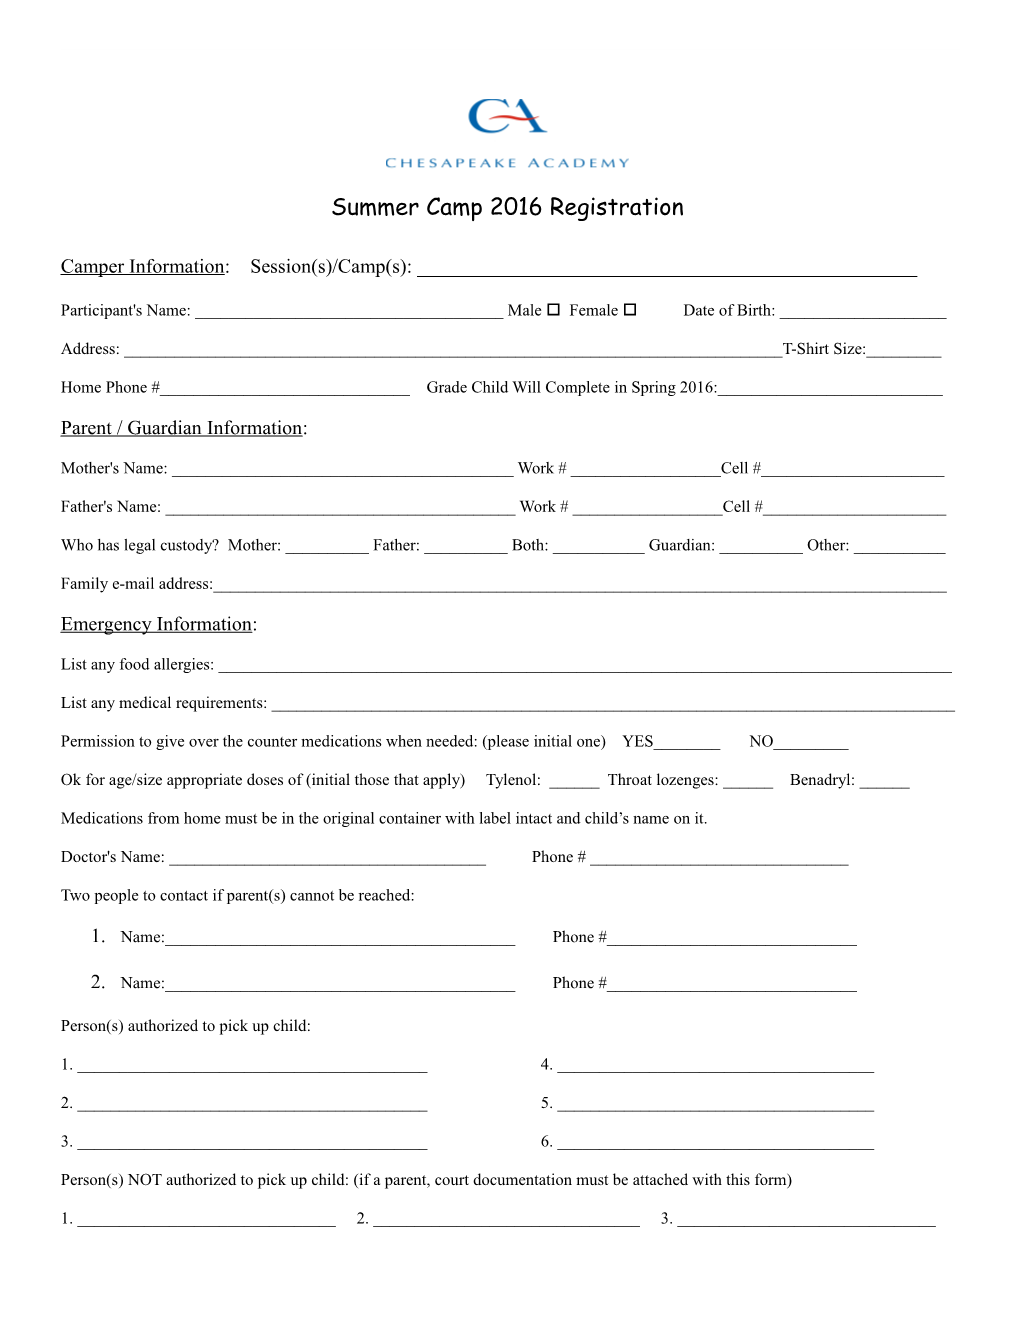 Multicultural Summer Camp Registration Form for 2004-04-06